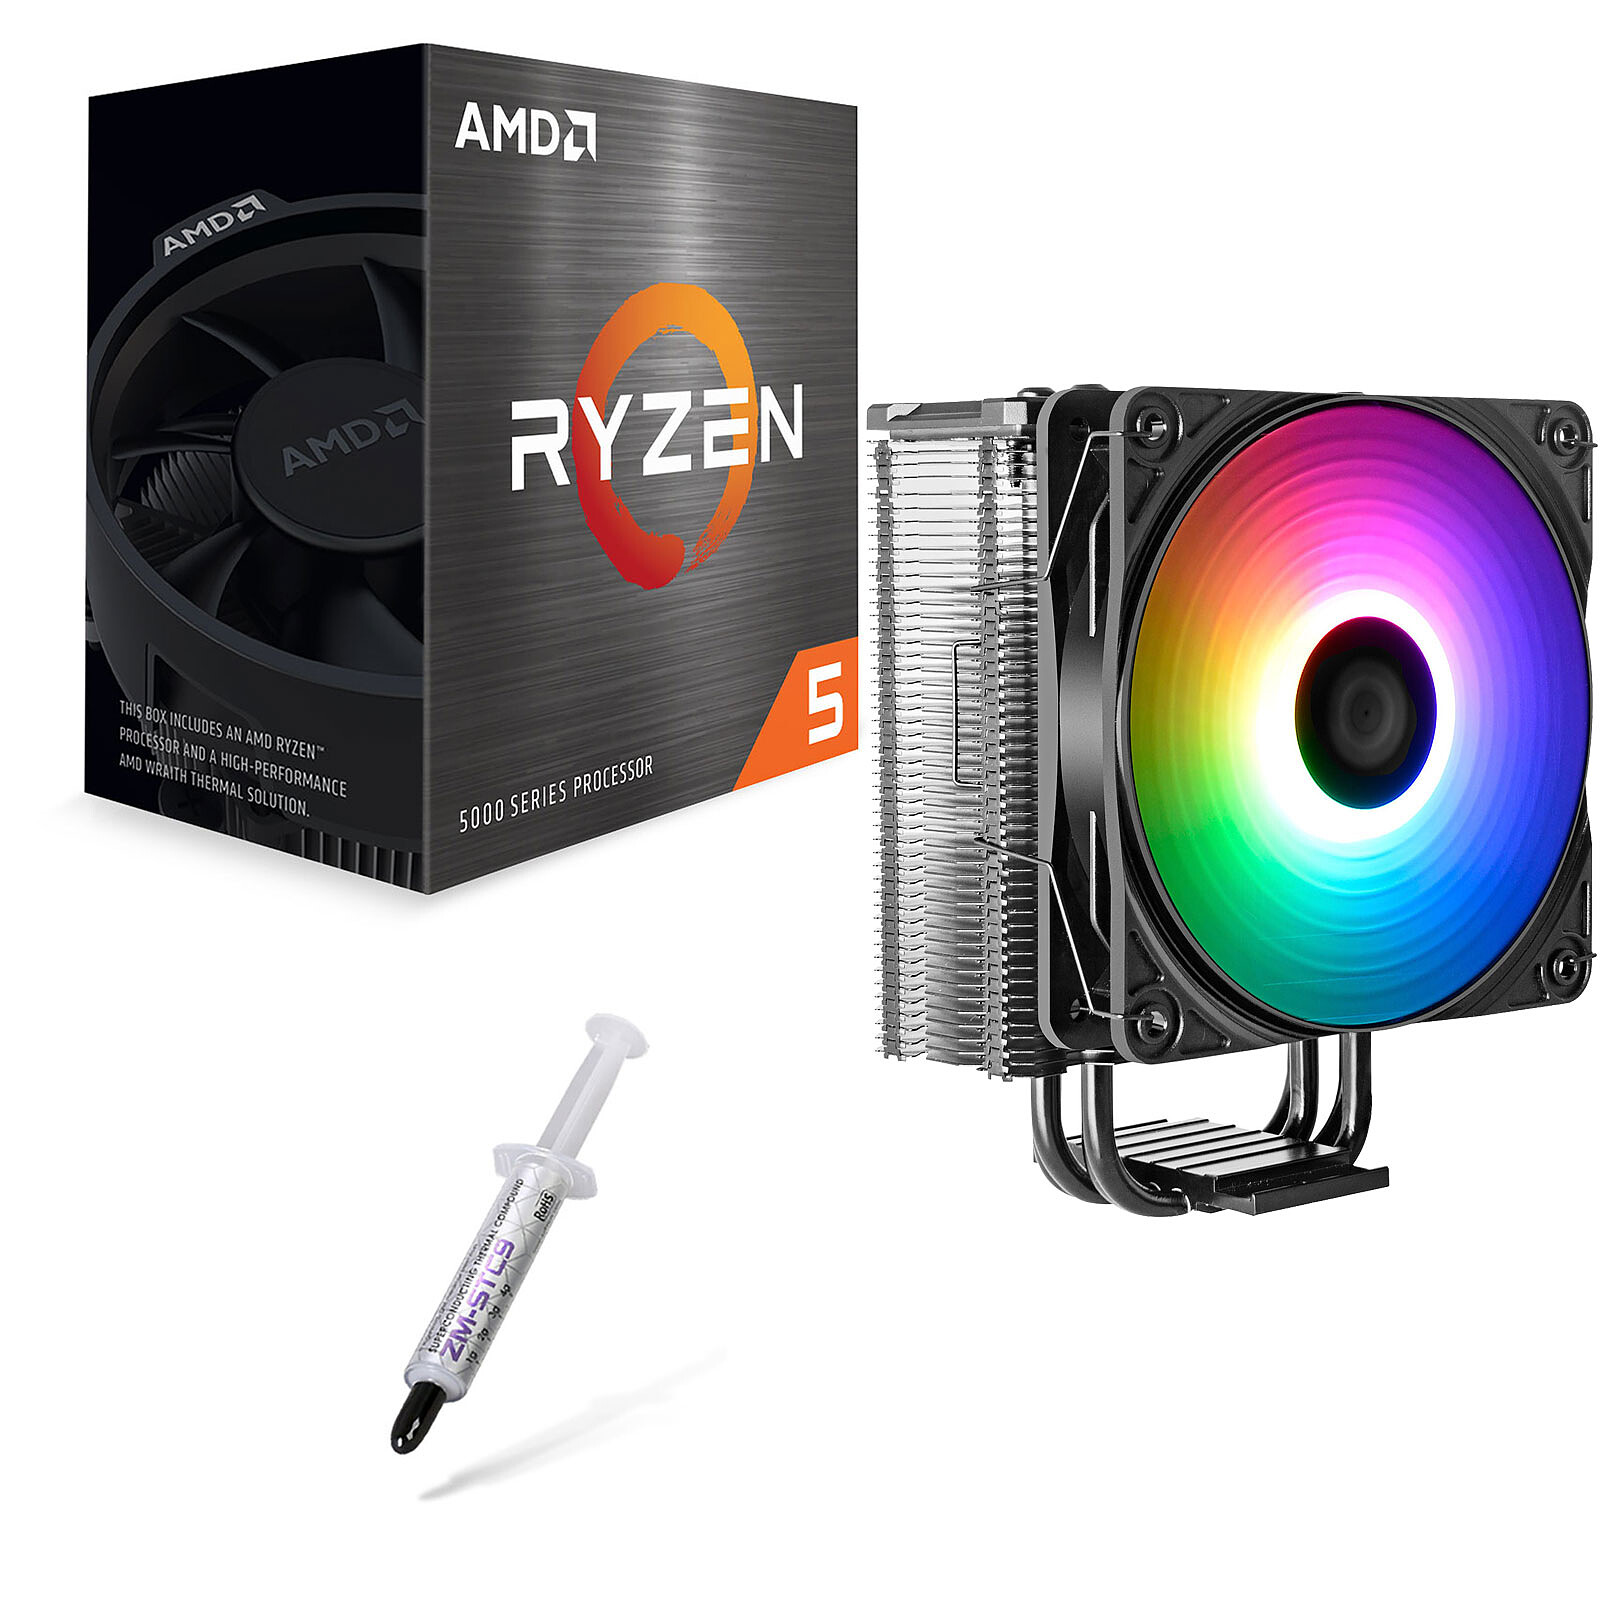 AMD Ryzen 5 5600 - Processeur AMD sur